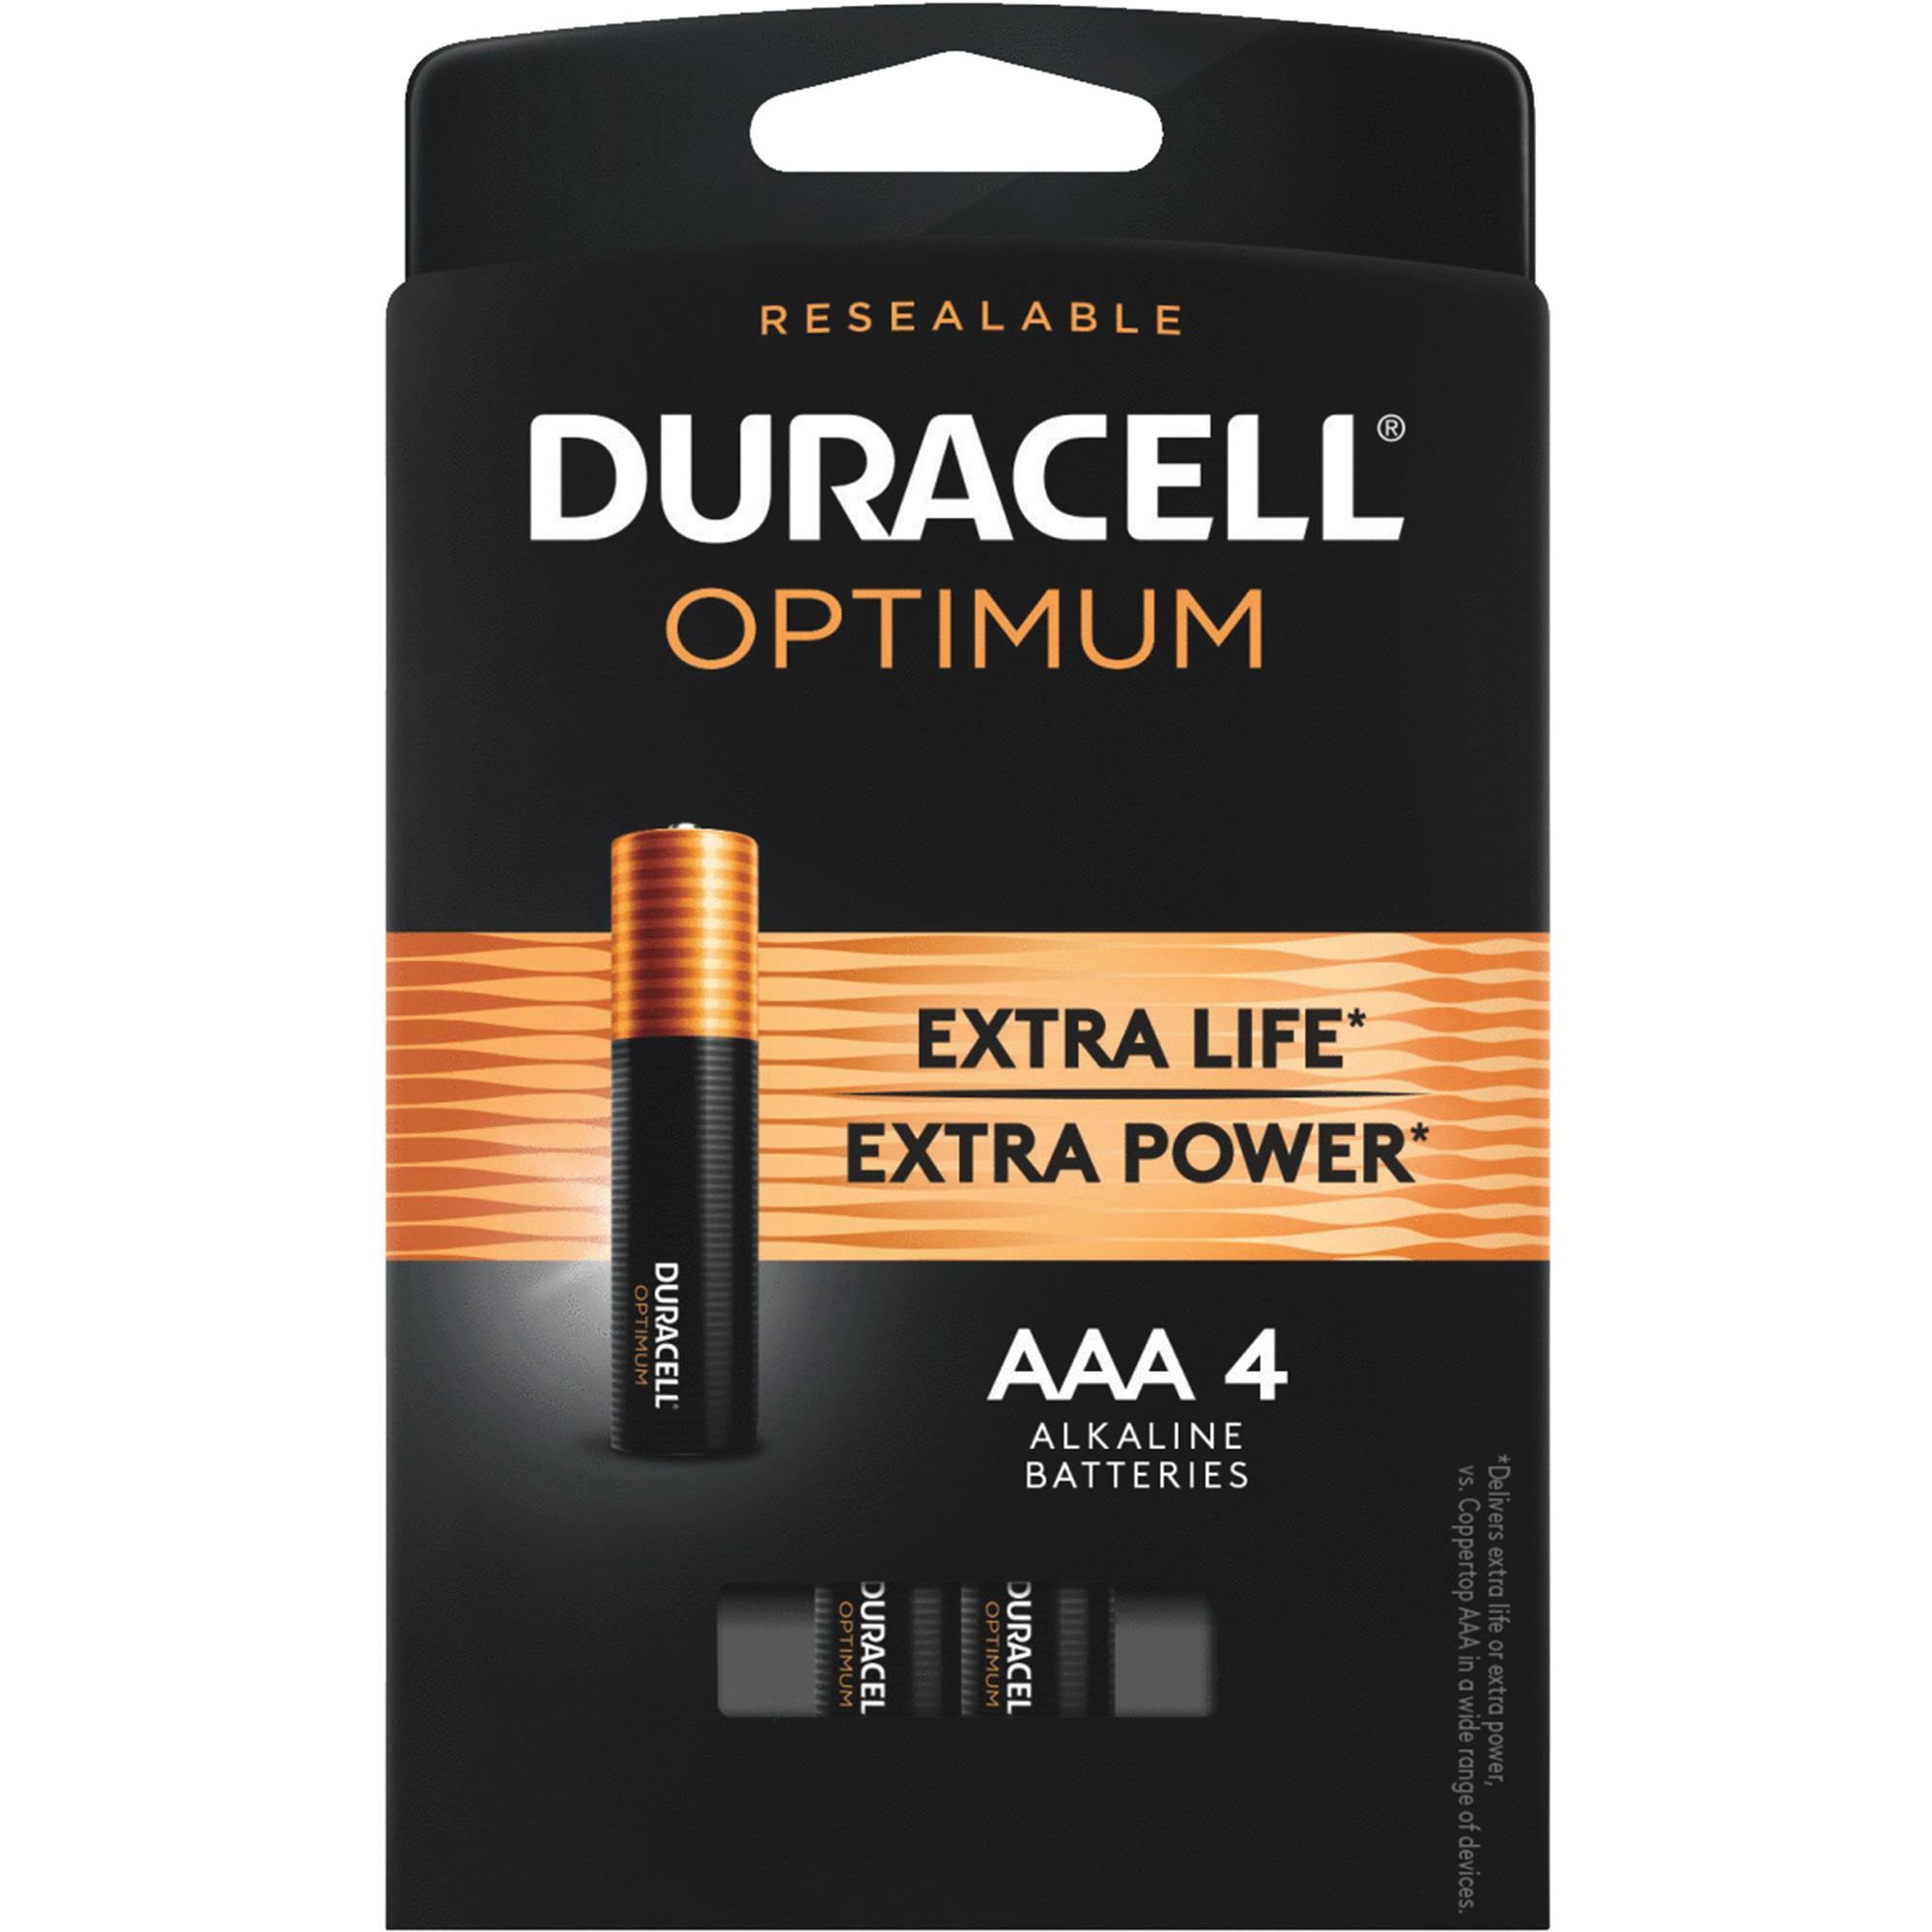 Duracell Optimum Alkaline Batteries - AAA, 1.5V, 4ct